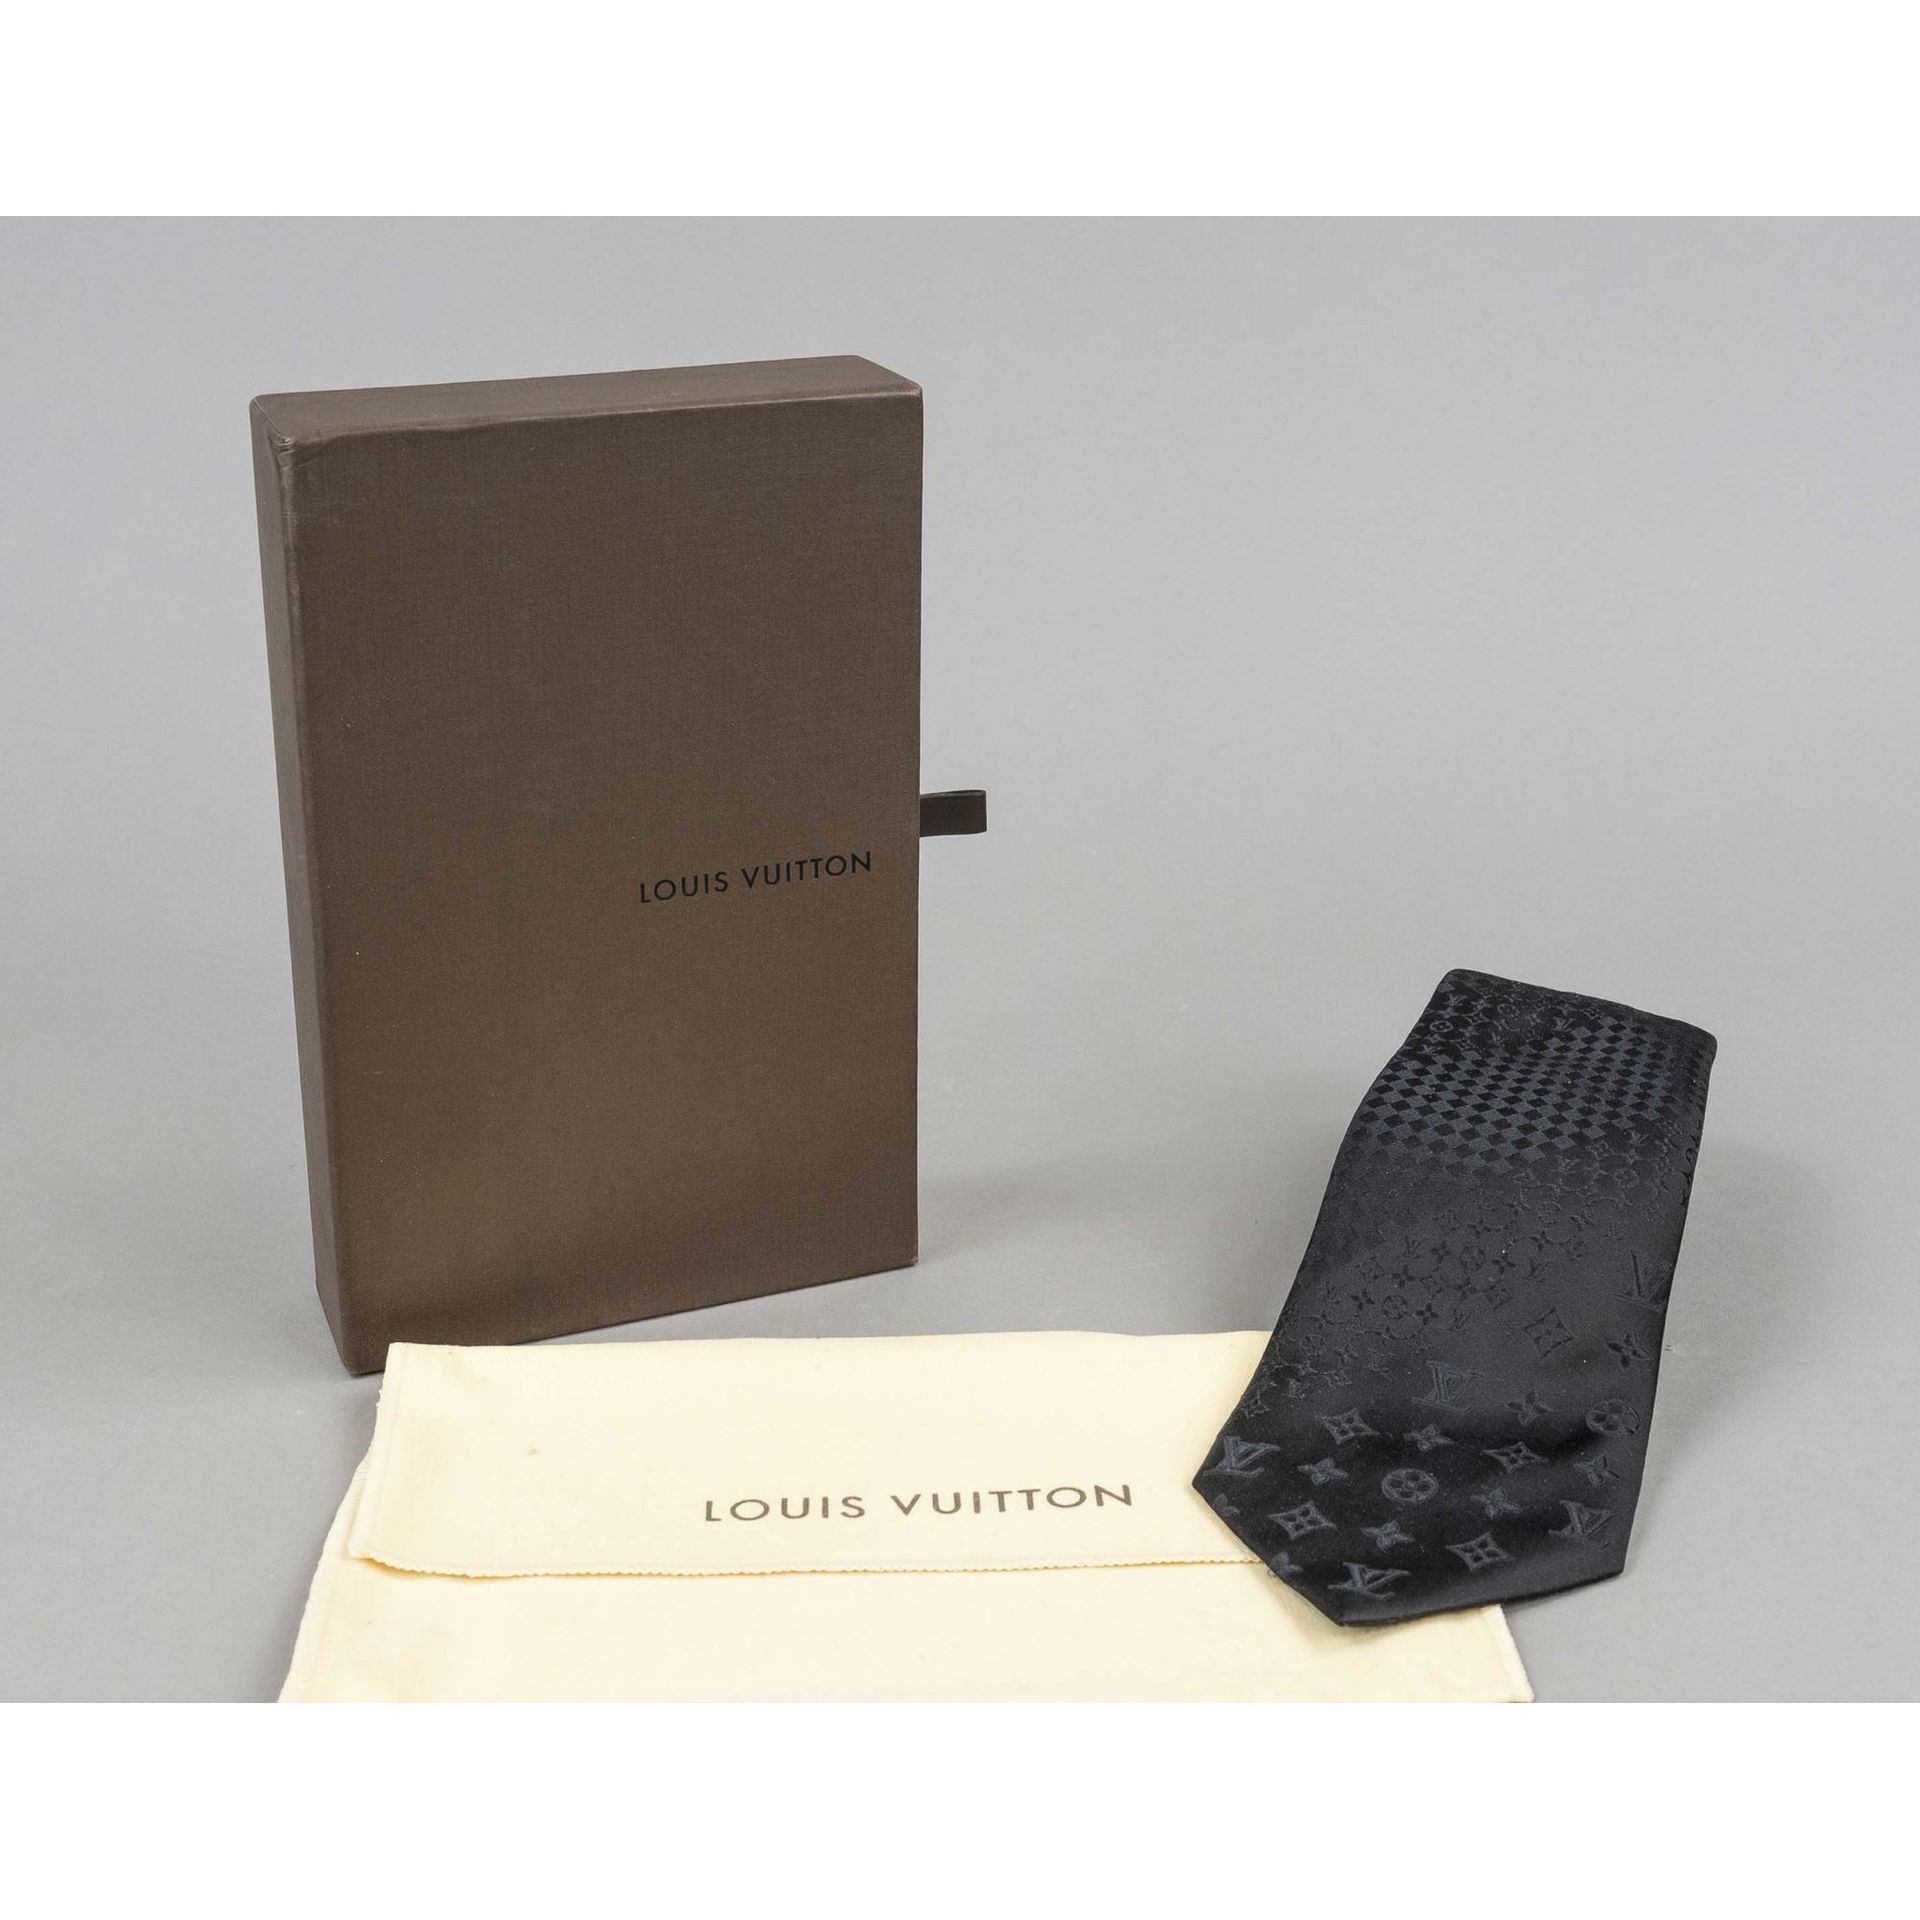 Louis Vuitton, corbata de caballero negra estampada de p…